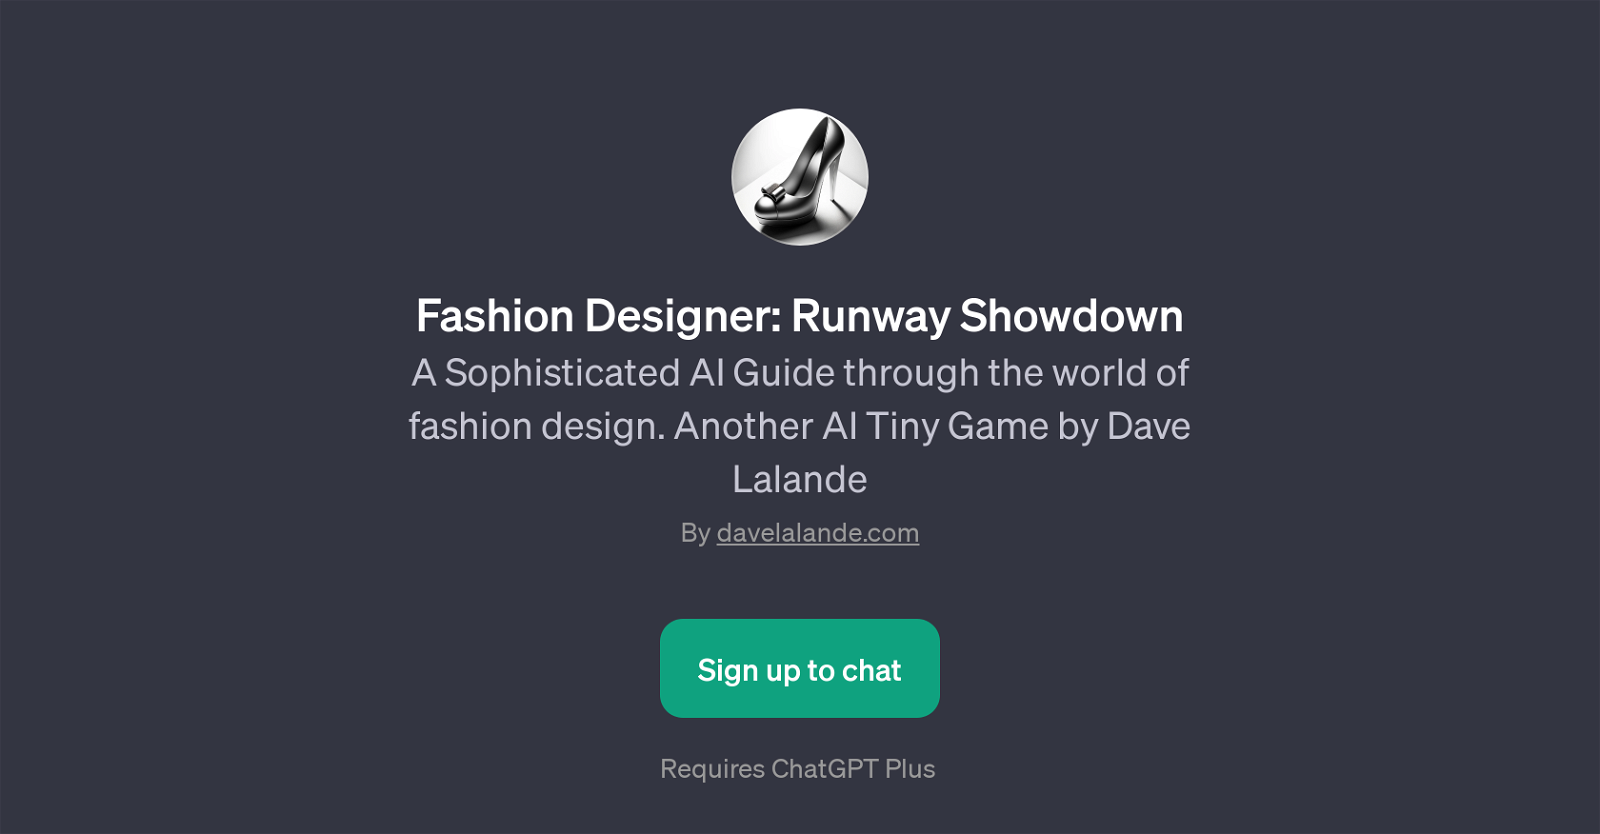 Fashion Designer: Runway Showdown website